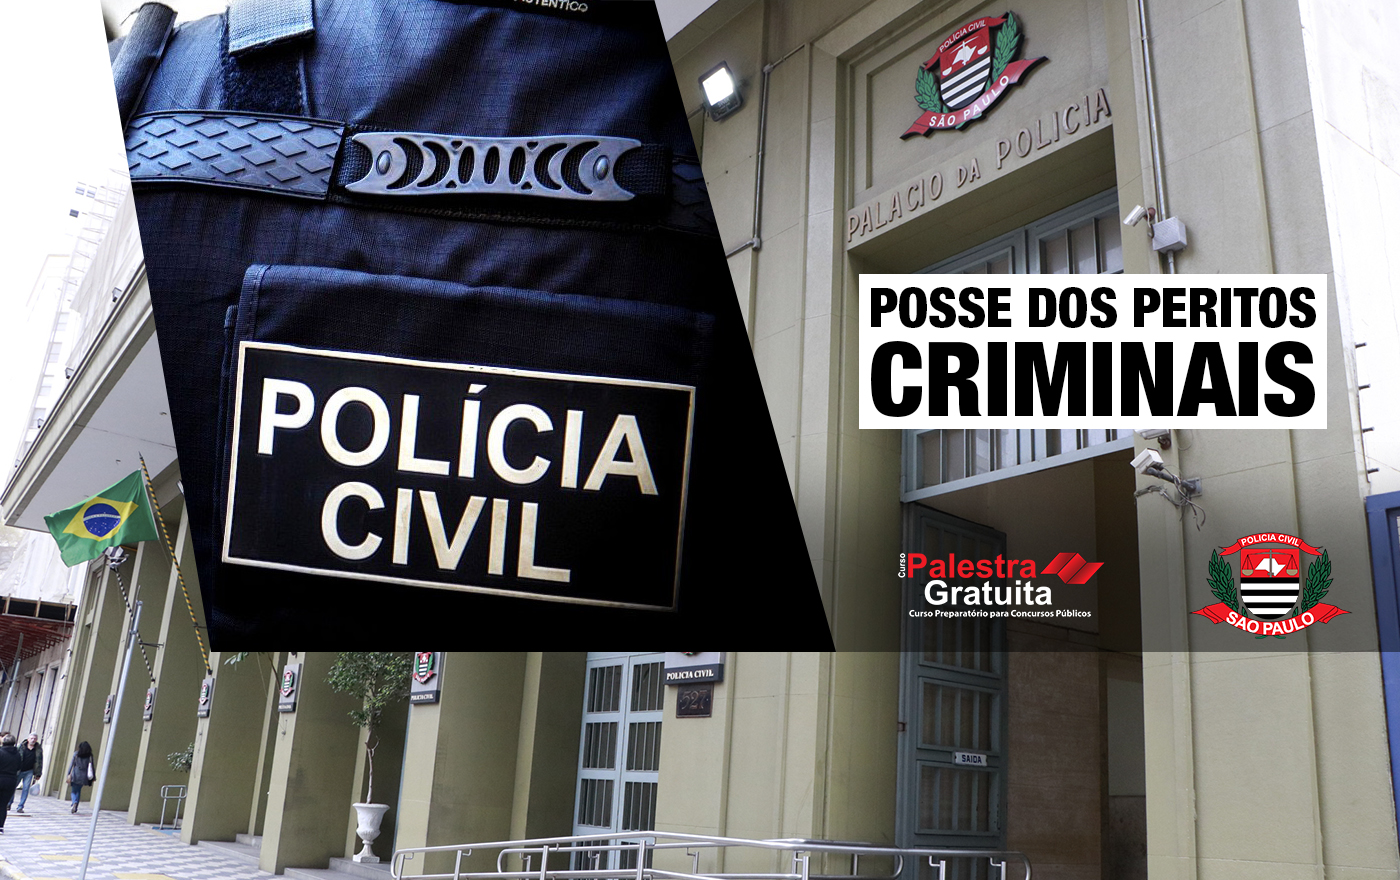 concurso da Polícia Civil – POSSE DOS PERITOS CRIMINAIS!